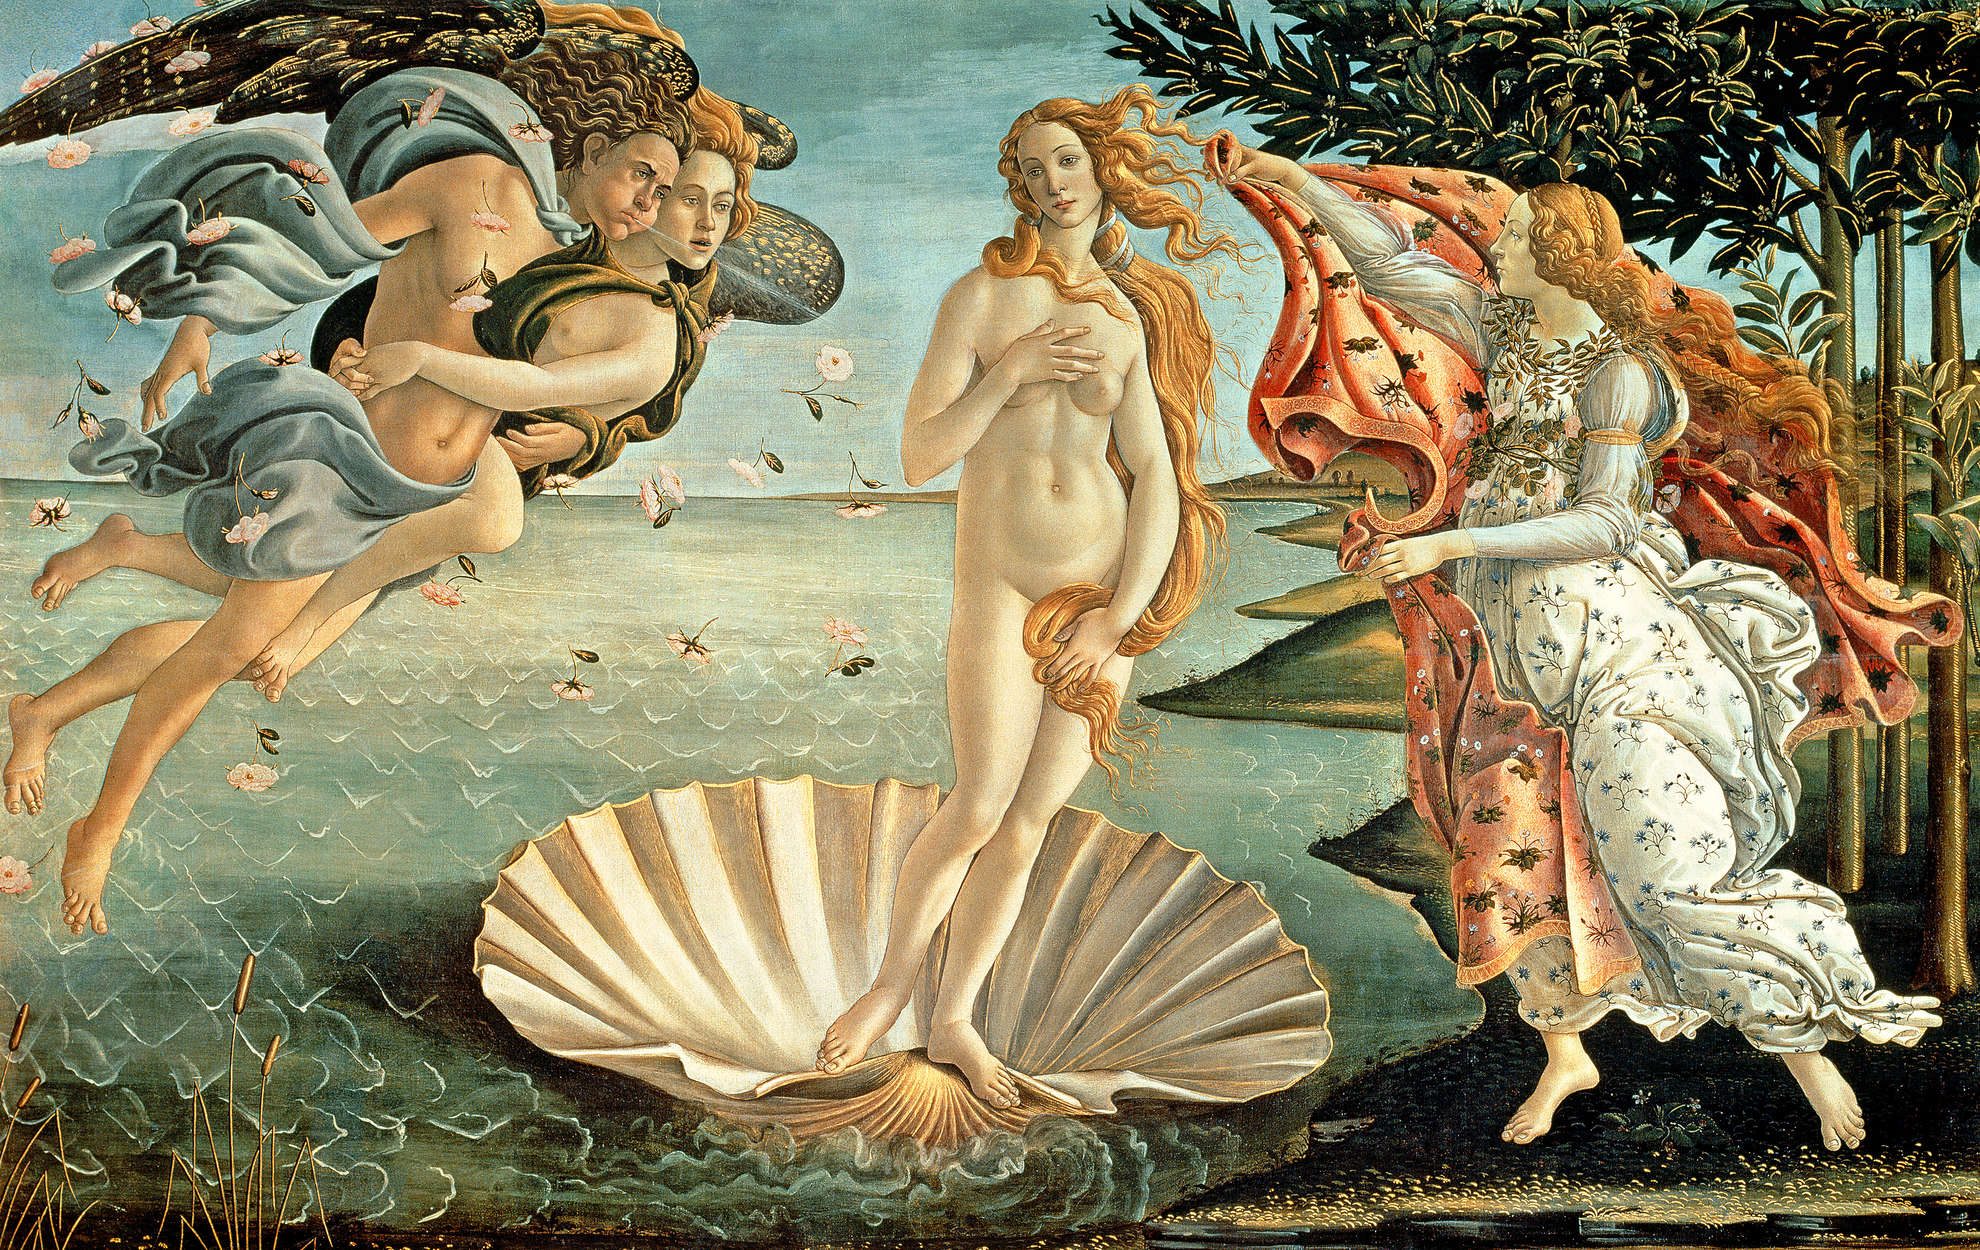             Fototapete "Die Geburt der Venus" von Sandro Botticelli
        